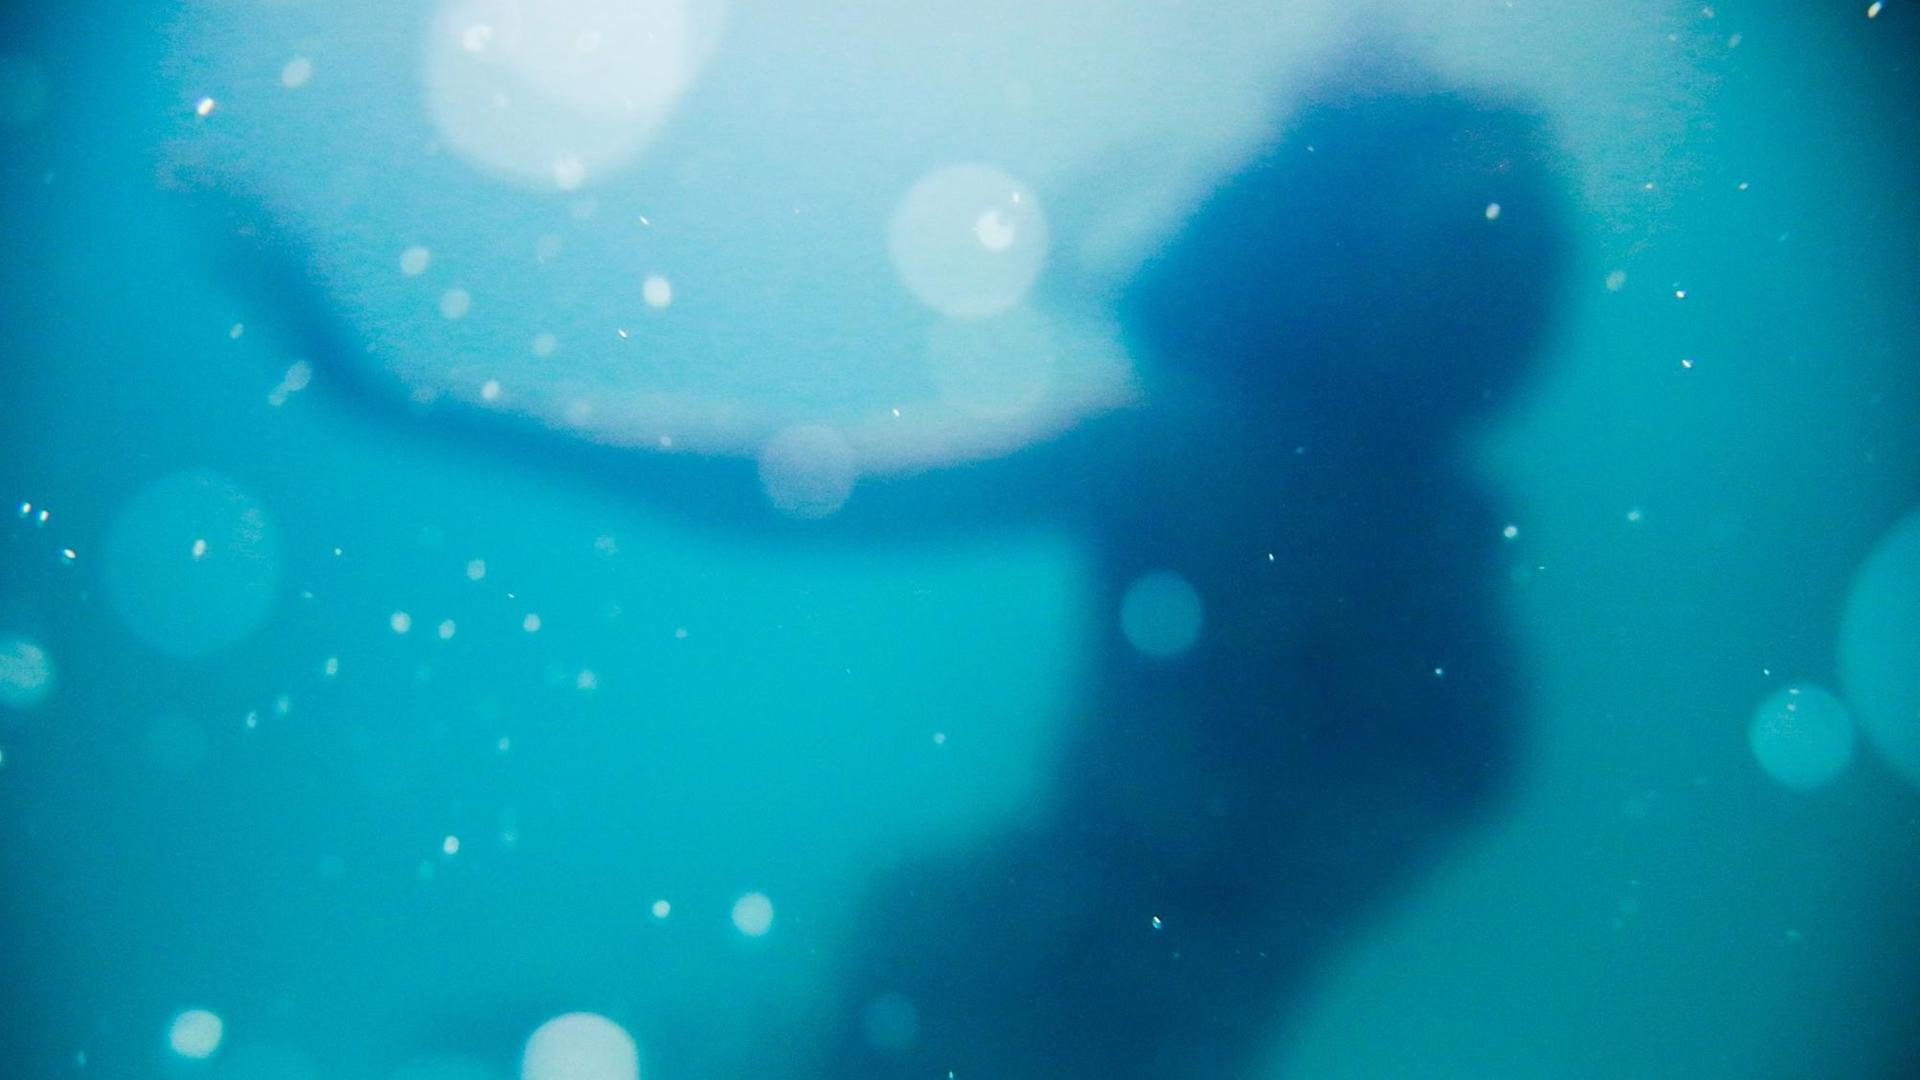 Junge Frau unter Wasser mit Wasserblasen.